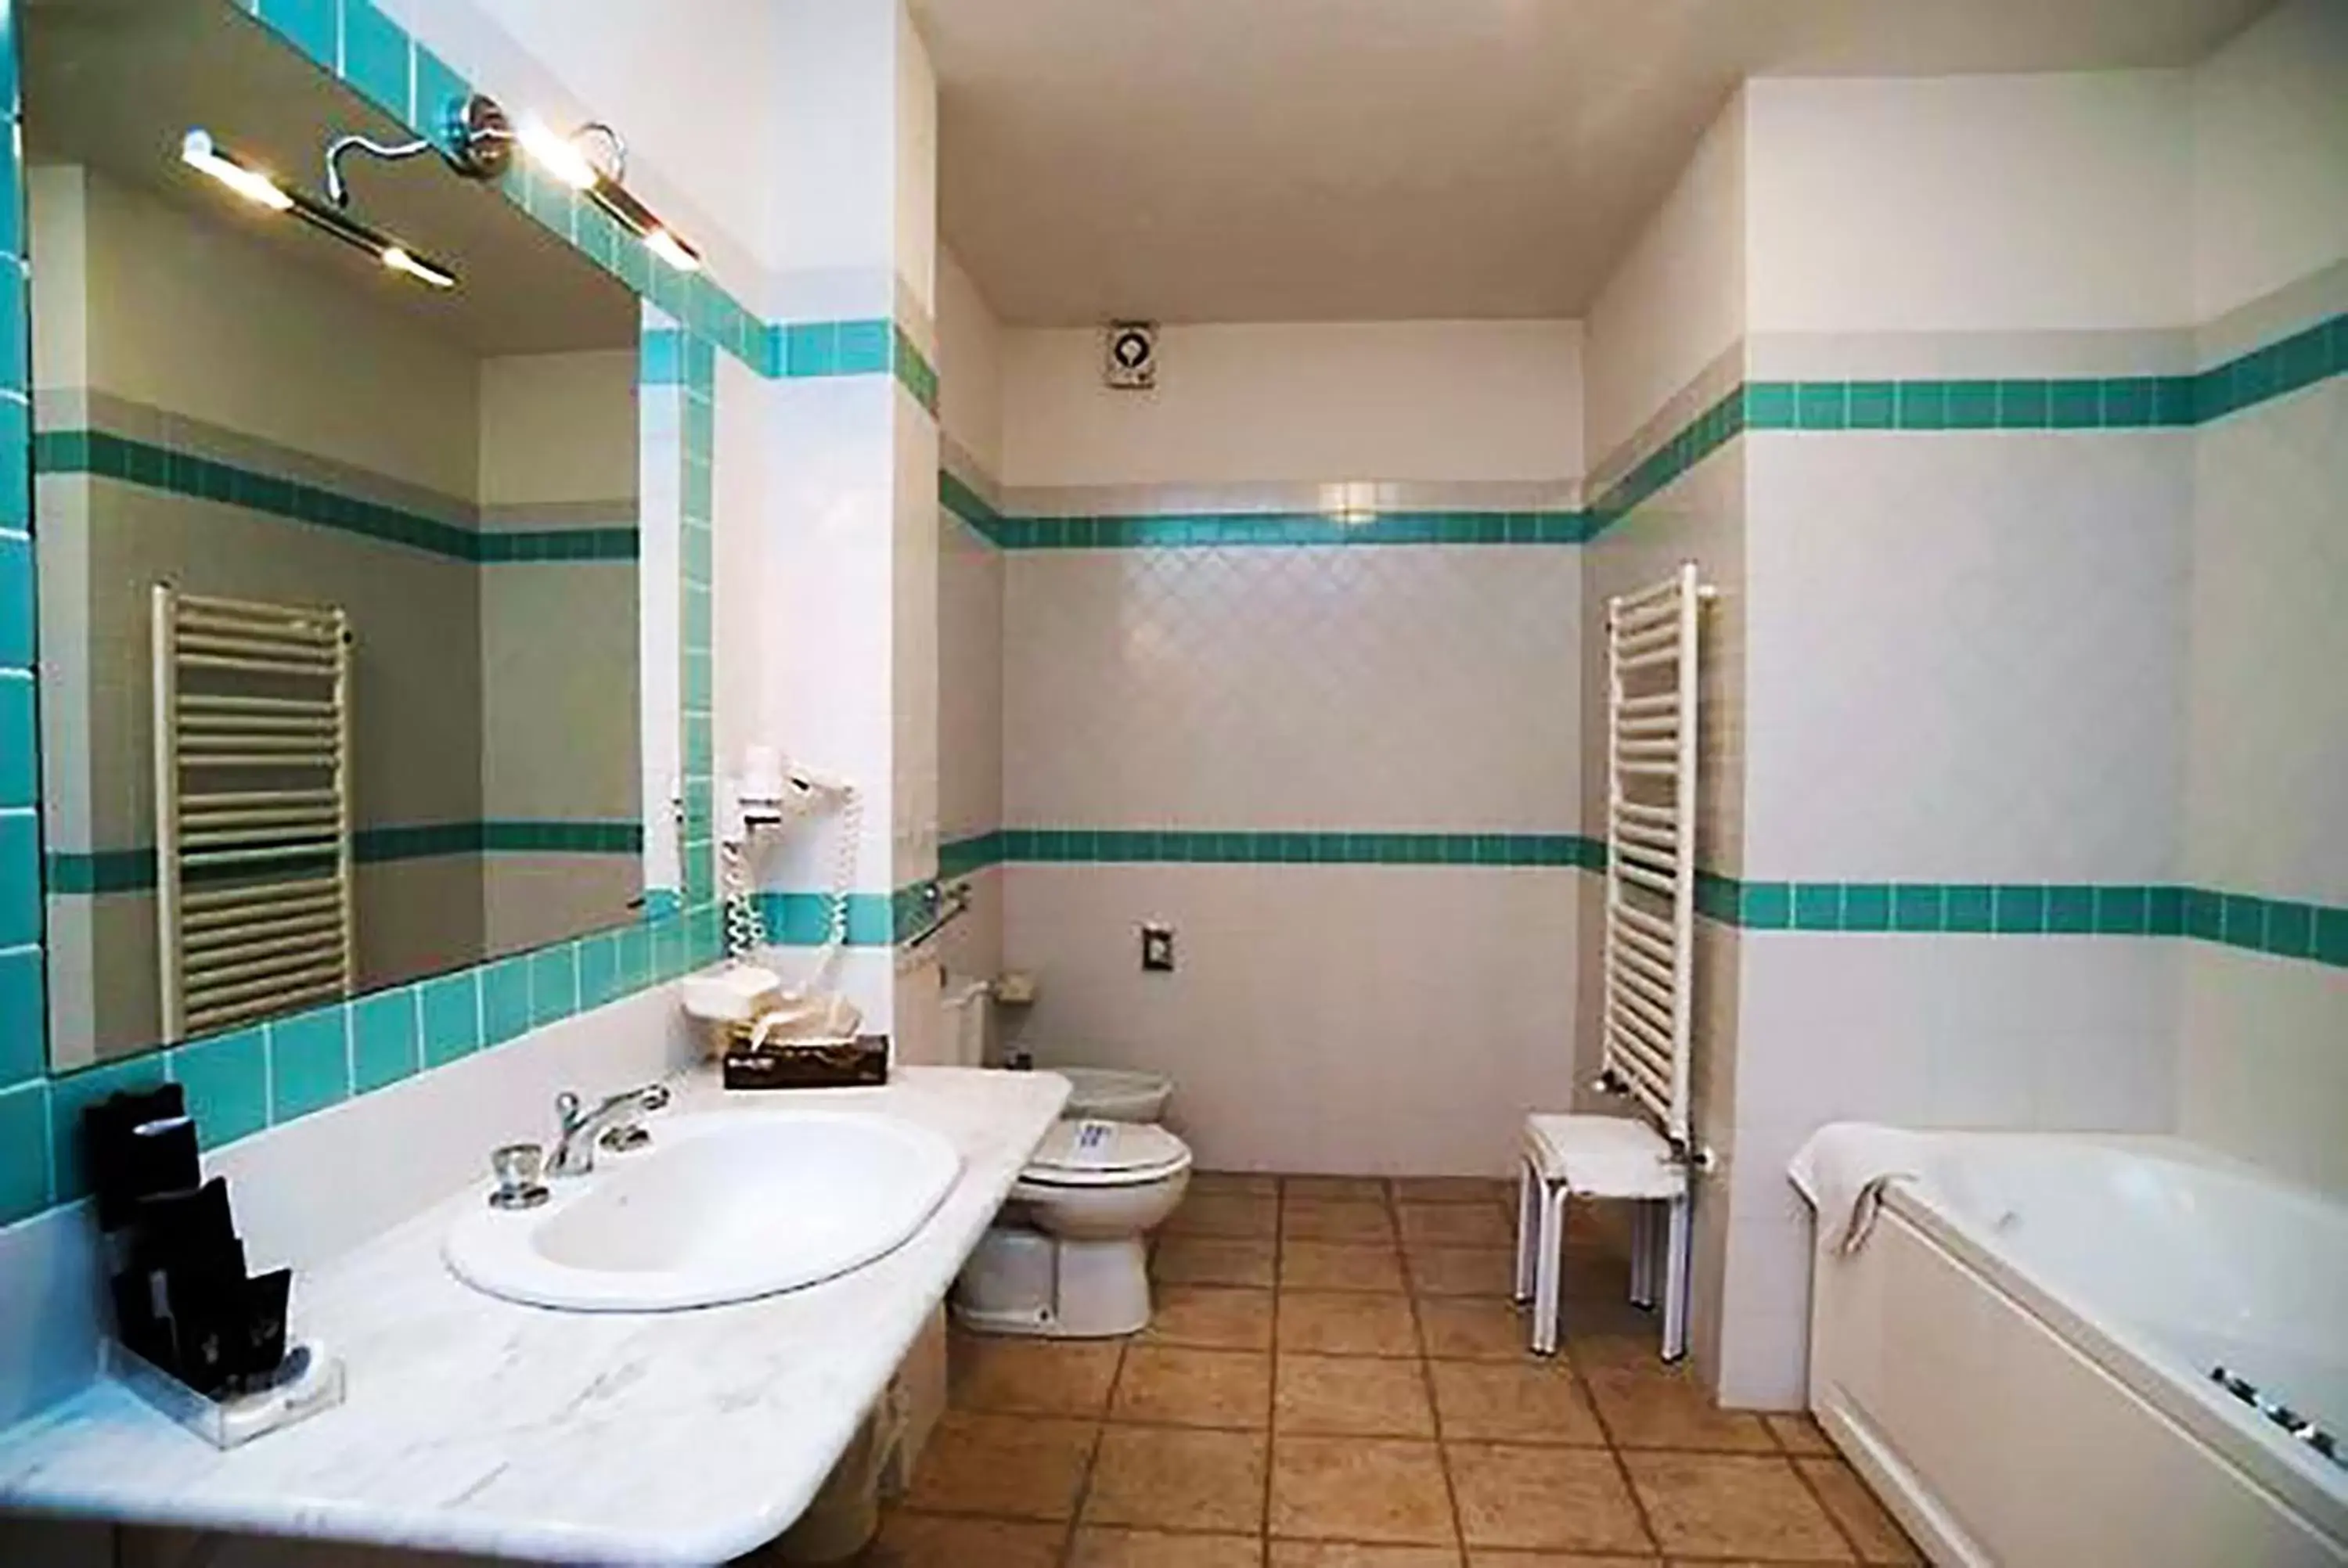 Hot Tub, Bathroom in Toscana Wellness Resort